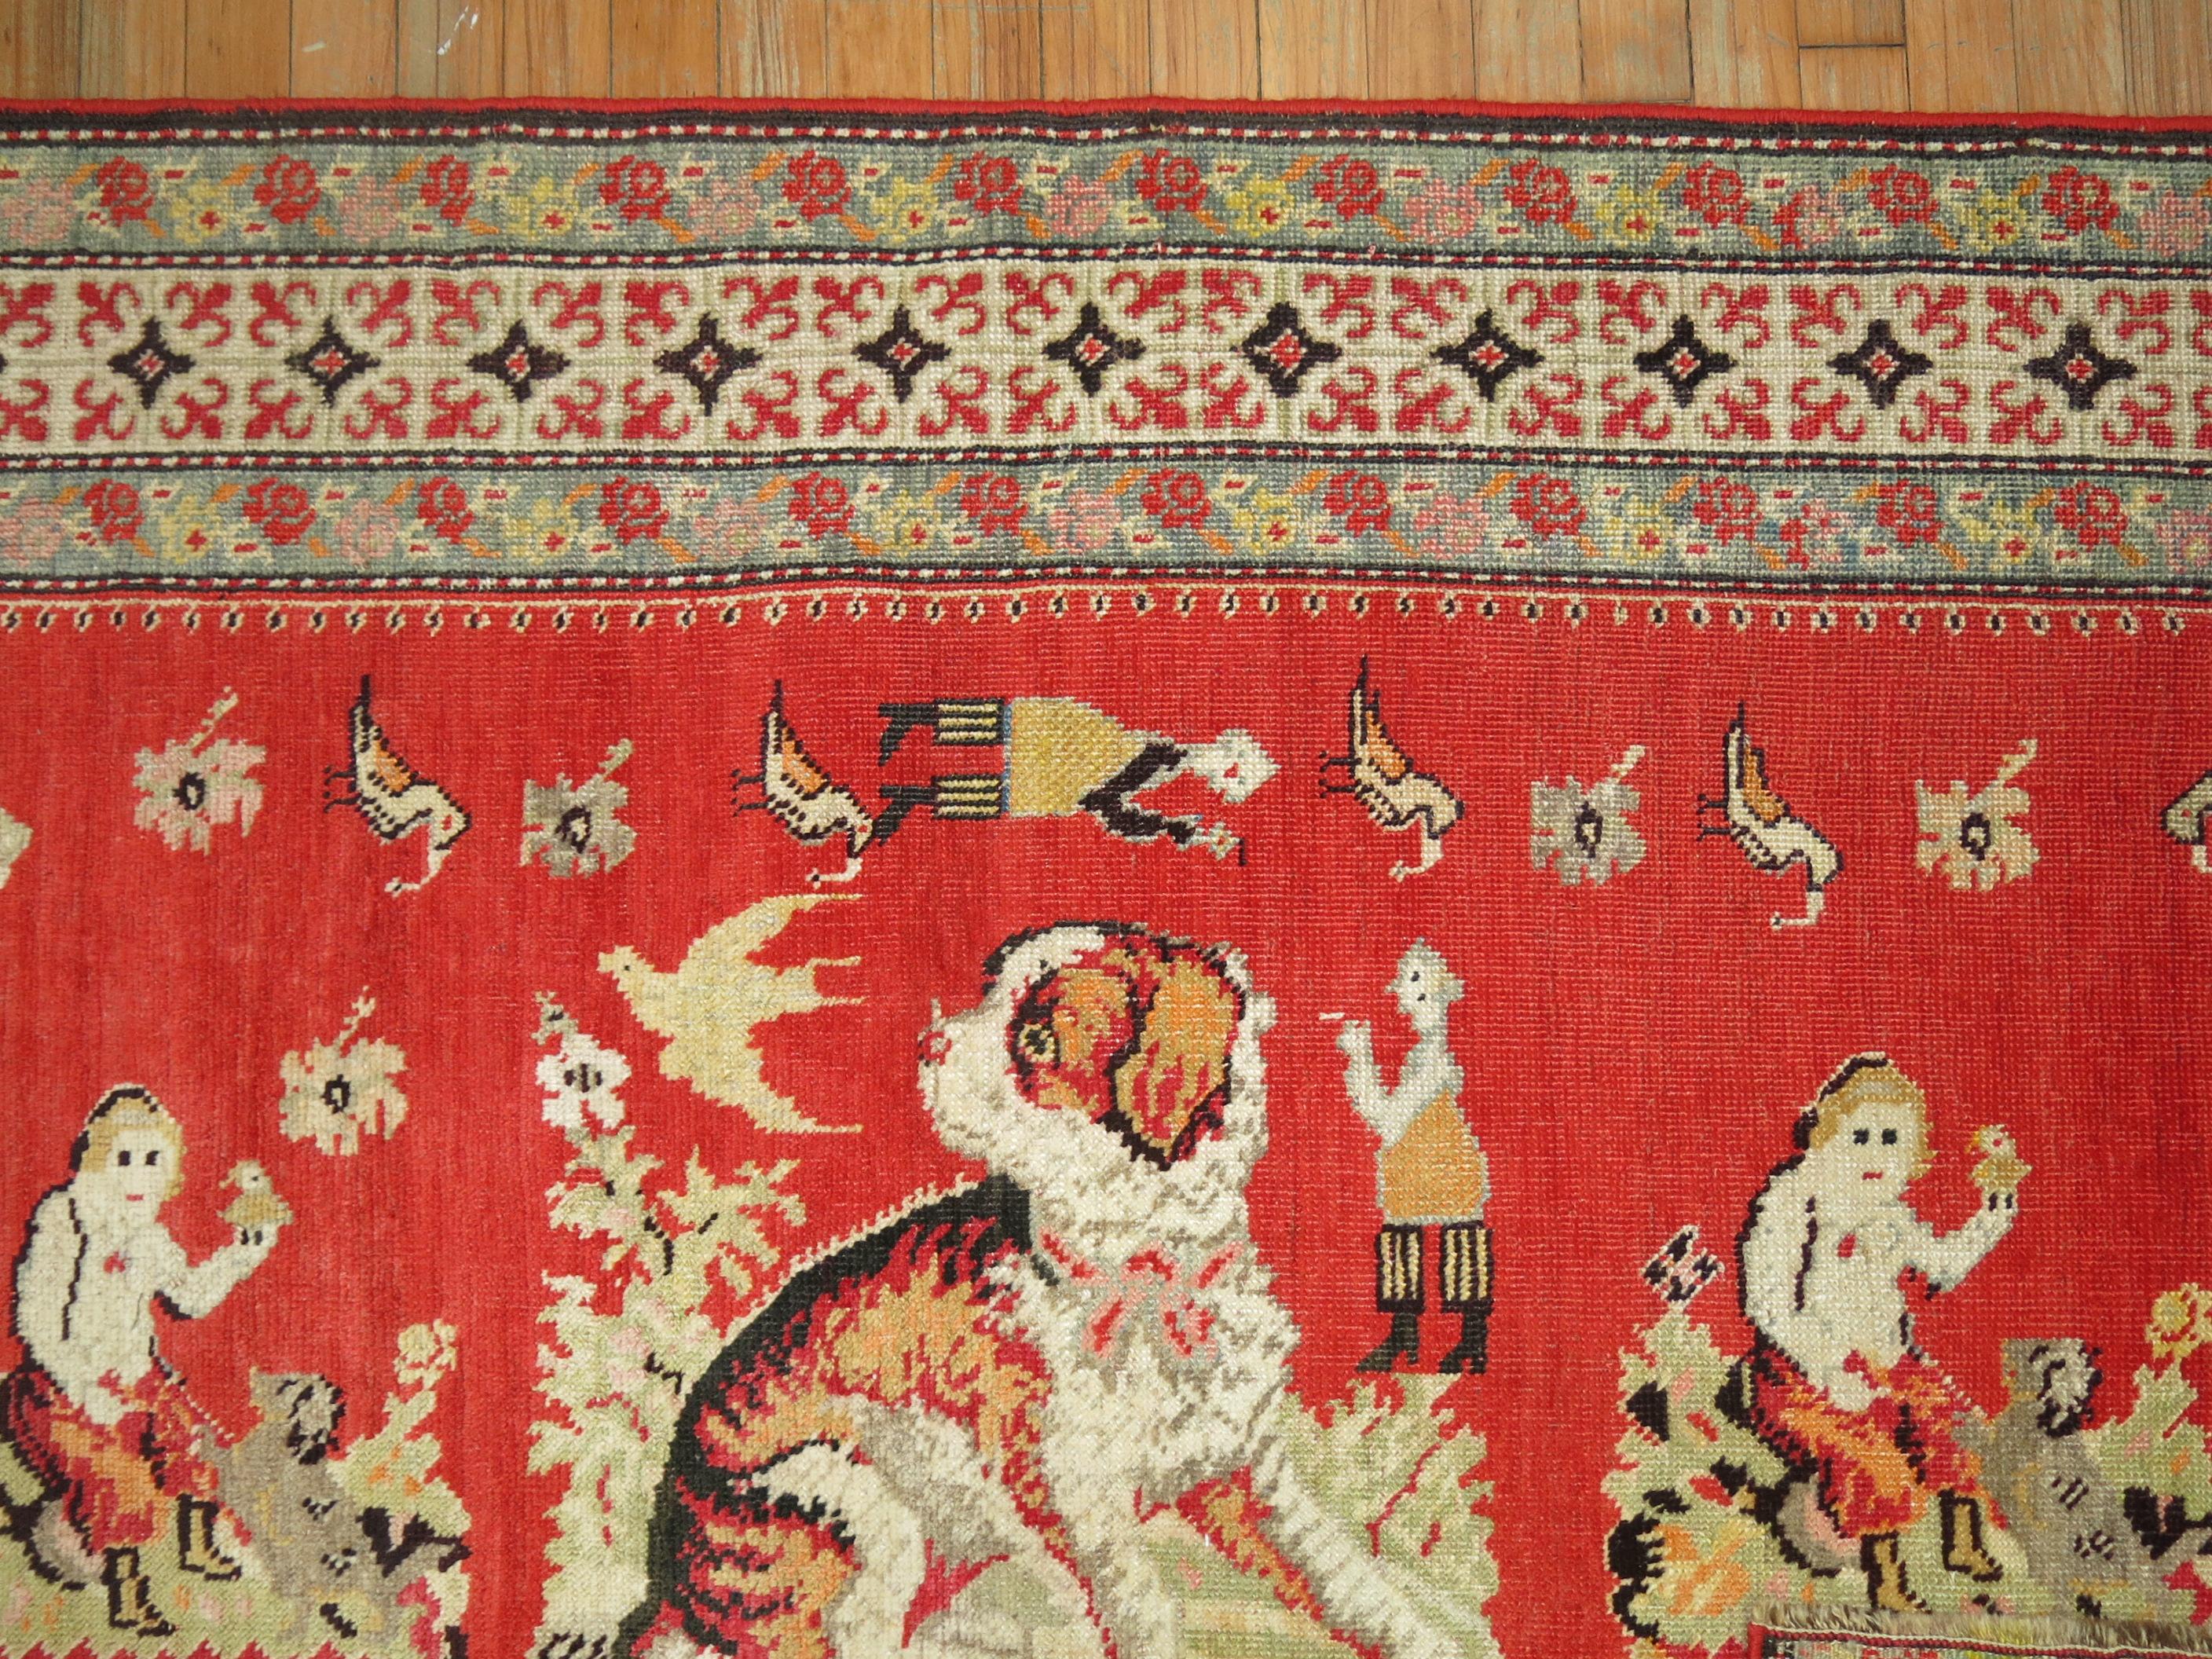 Ein Bildteppich mit einem Hund, der um verschiedene Menschen, Tiere und Figuren auf rotem Grund schwebt.